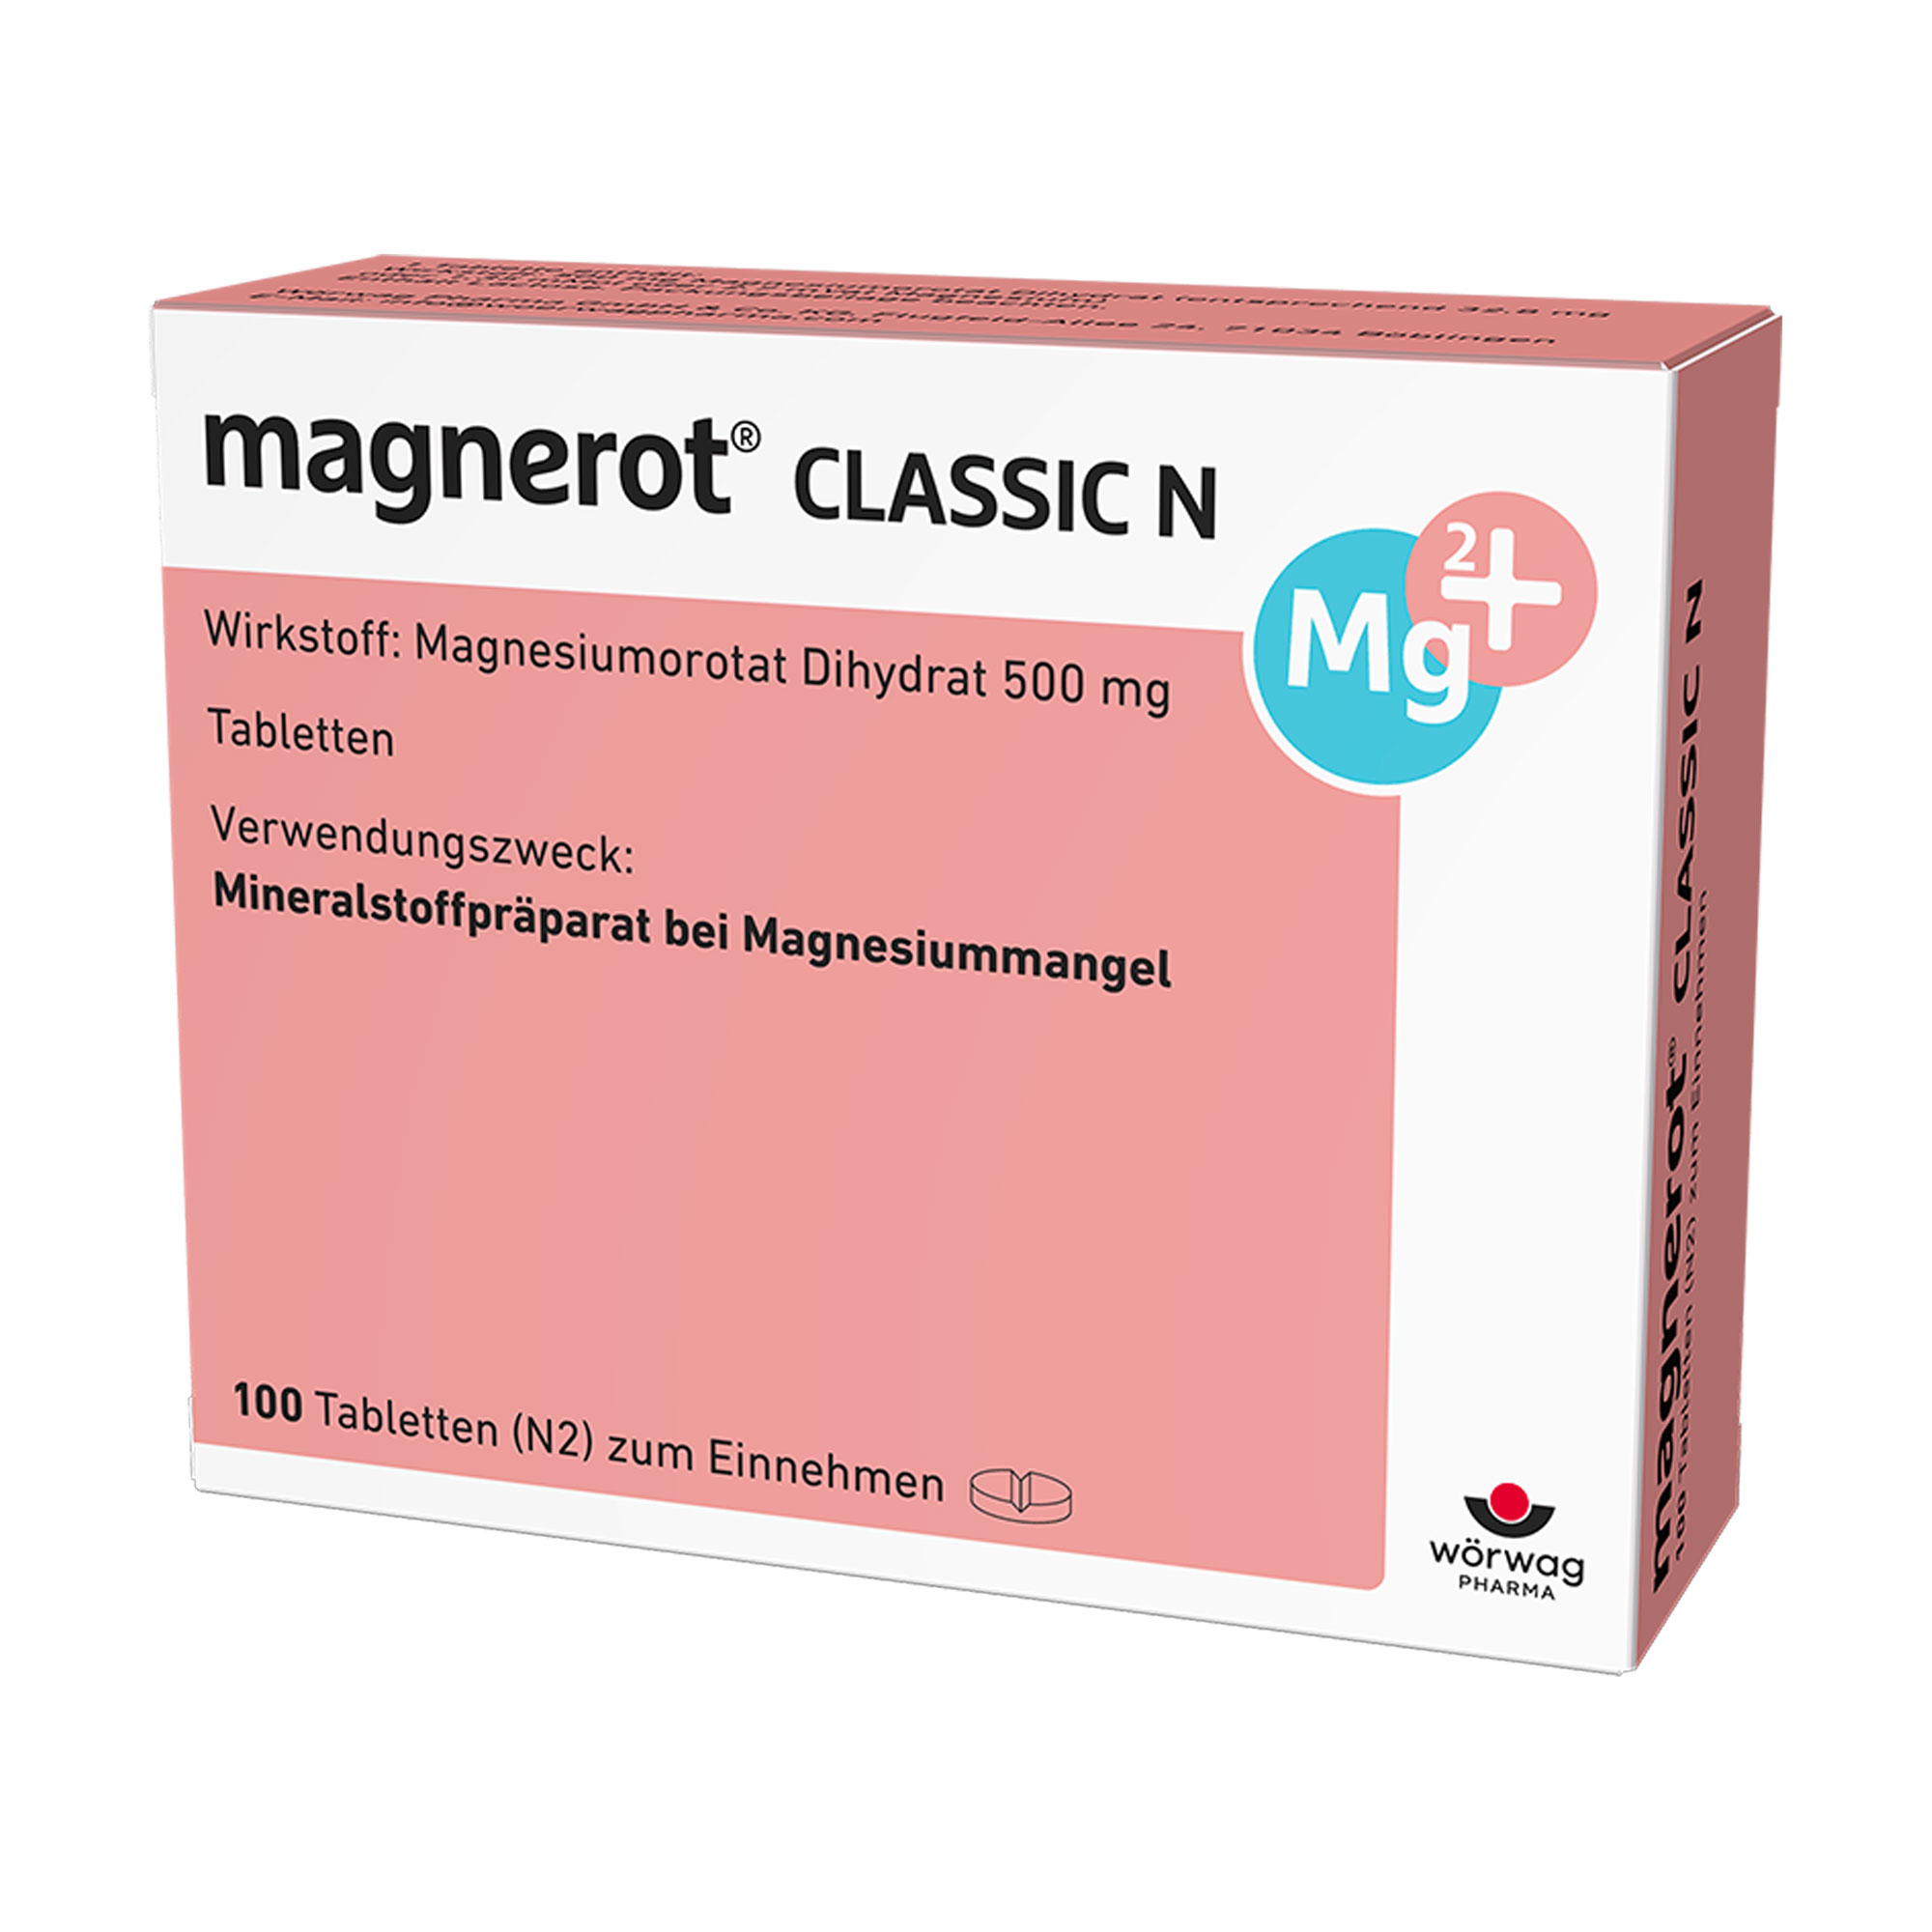 Mineralstoffpräparat bei Magnesiummangel, wenn er Ursache für Störungen der Muskeltätigkeit (neuromuskuläre Störungen, Wadenkrämpfe) ist.